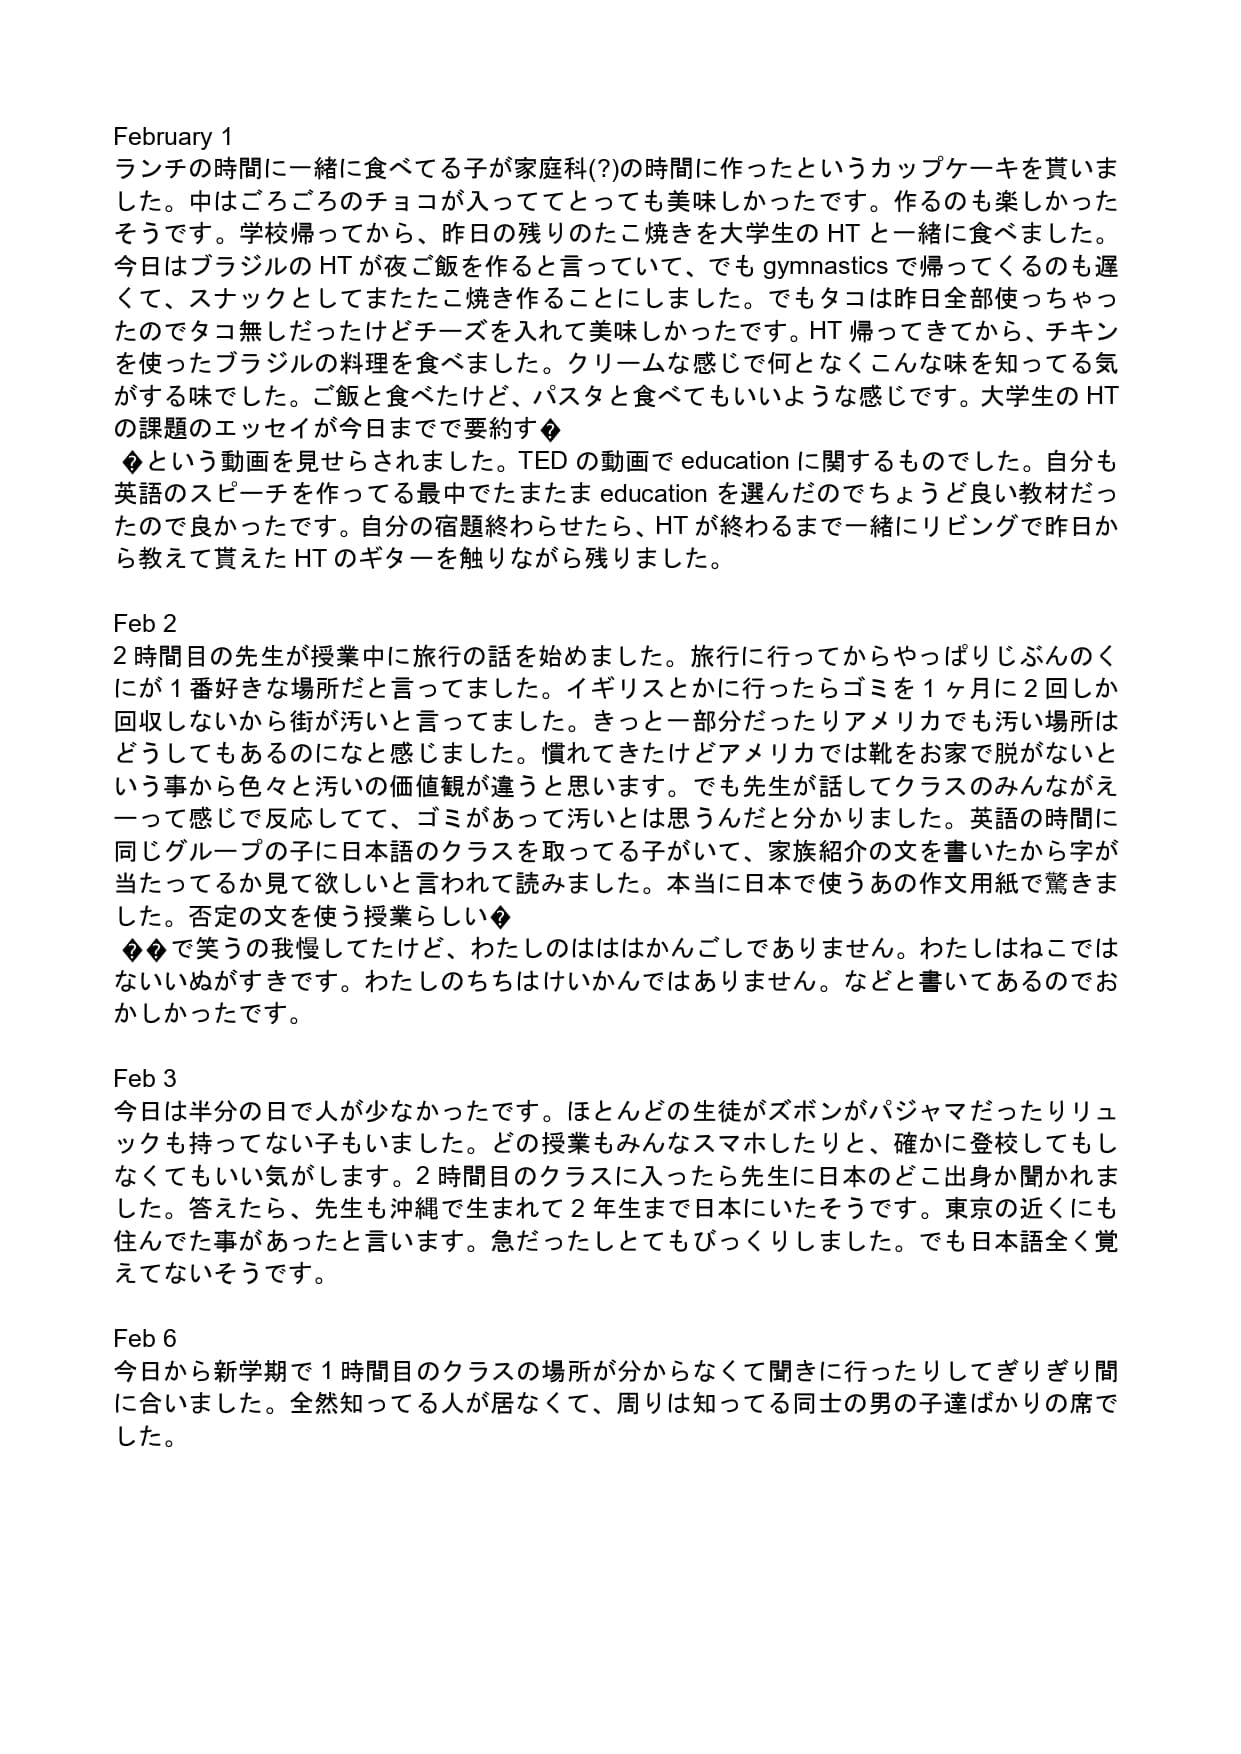 ユノの2月のStudent Report